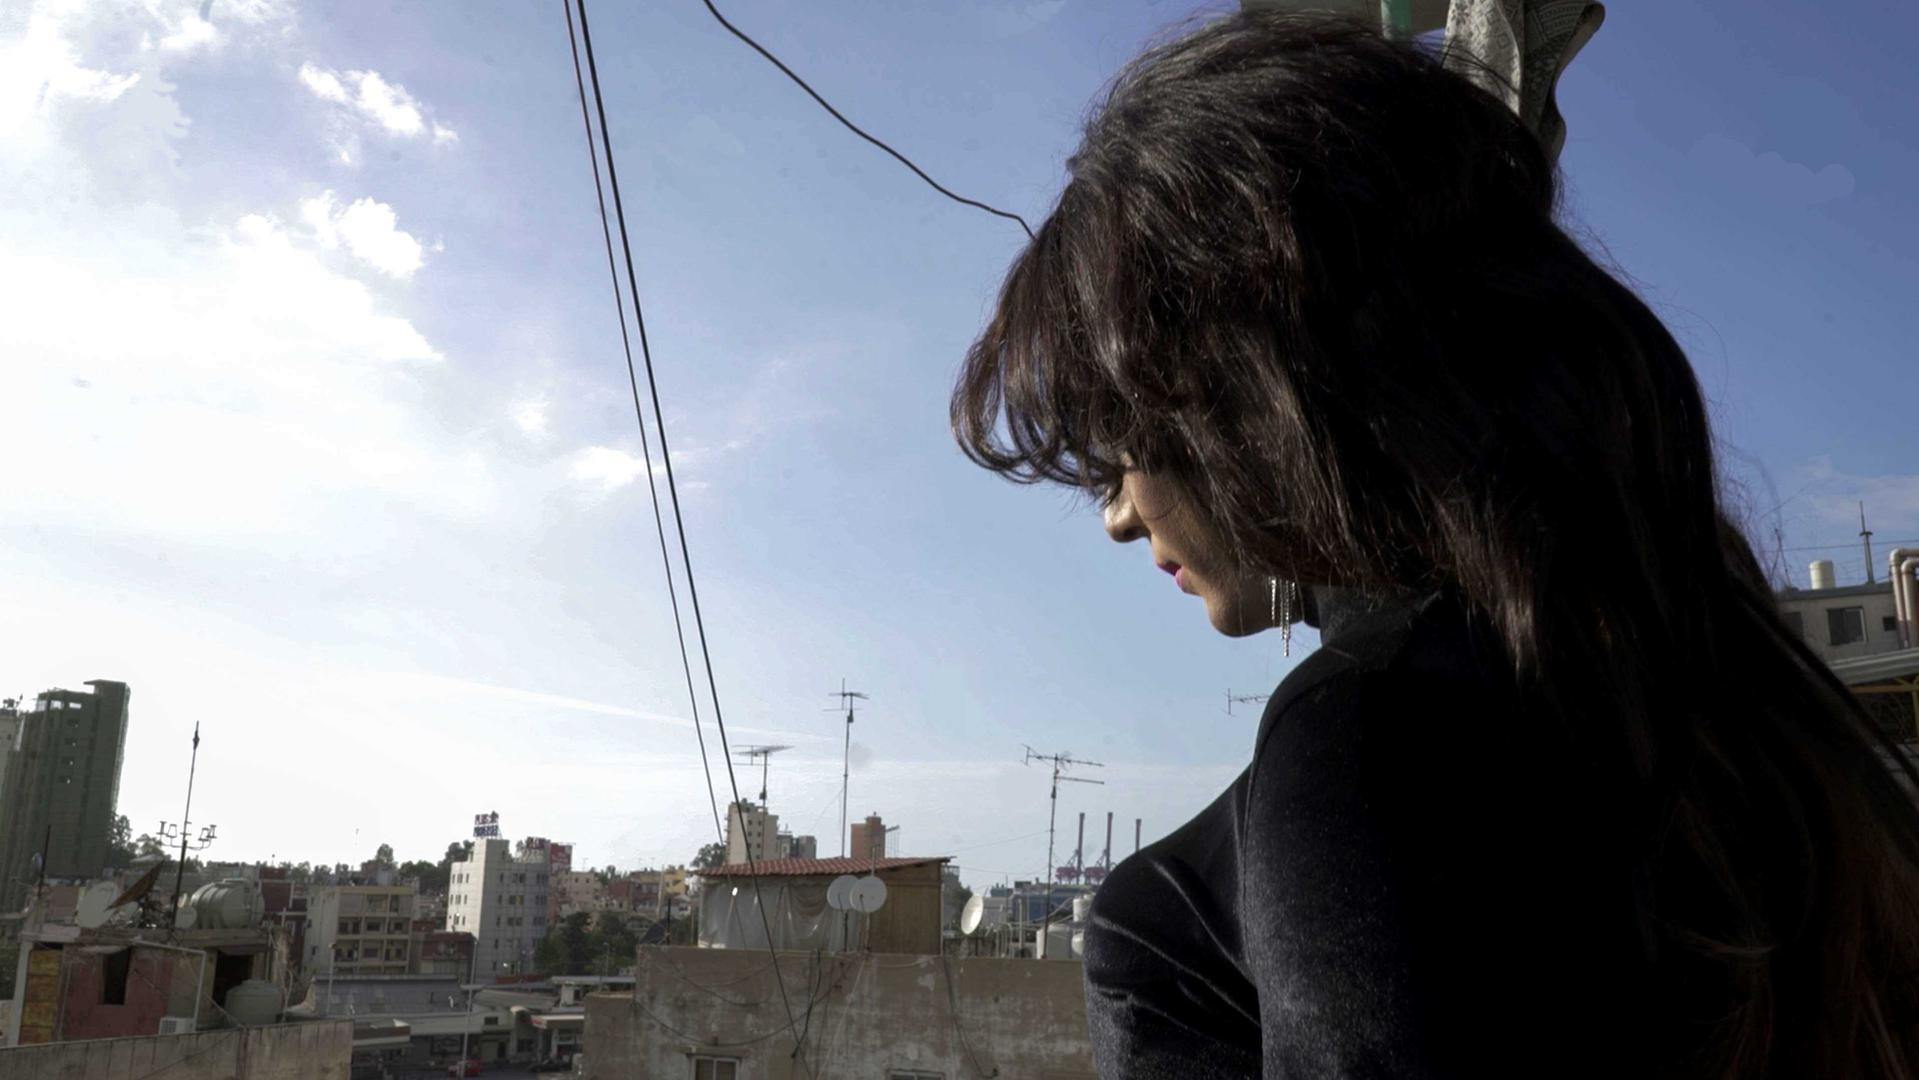 التمييز البنيوي ضد النساء الترانس في لبنان | HRW